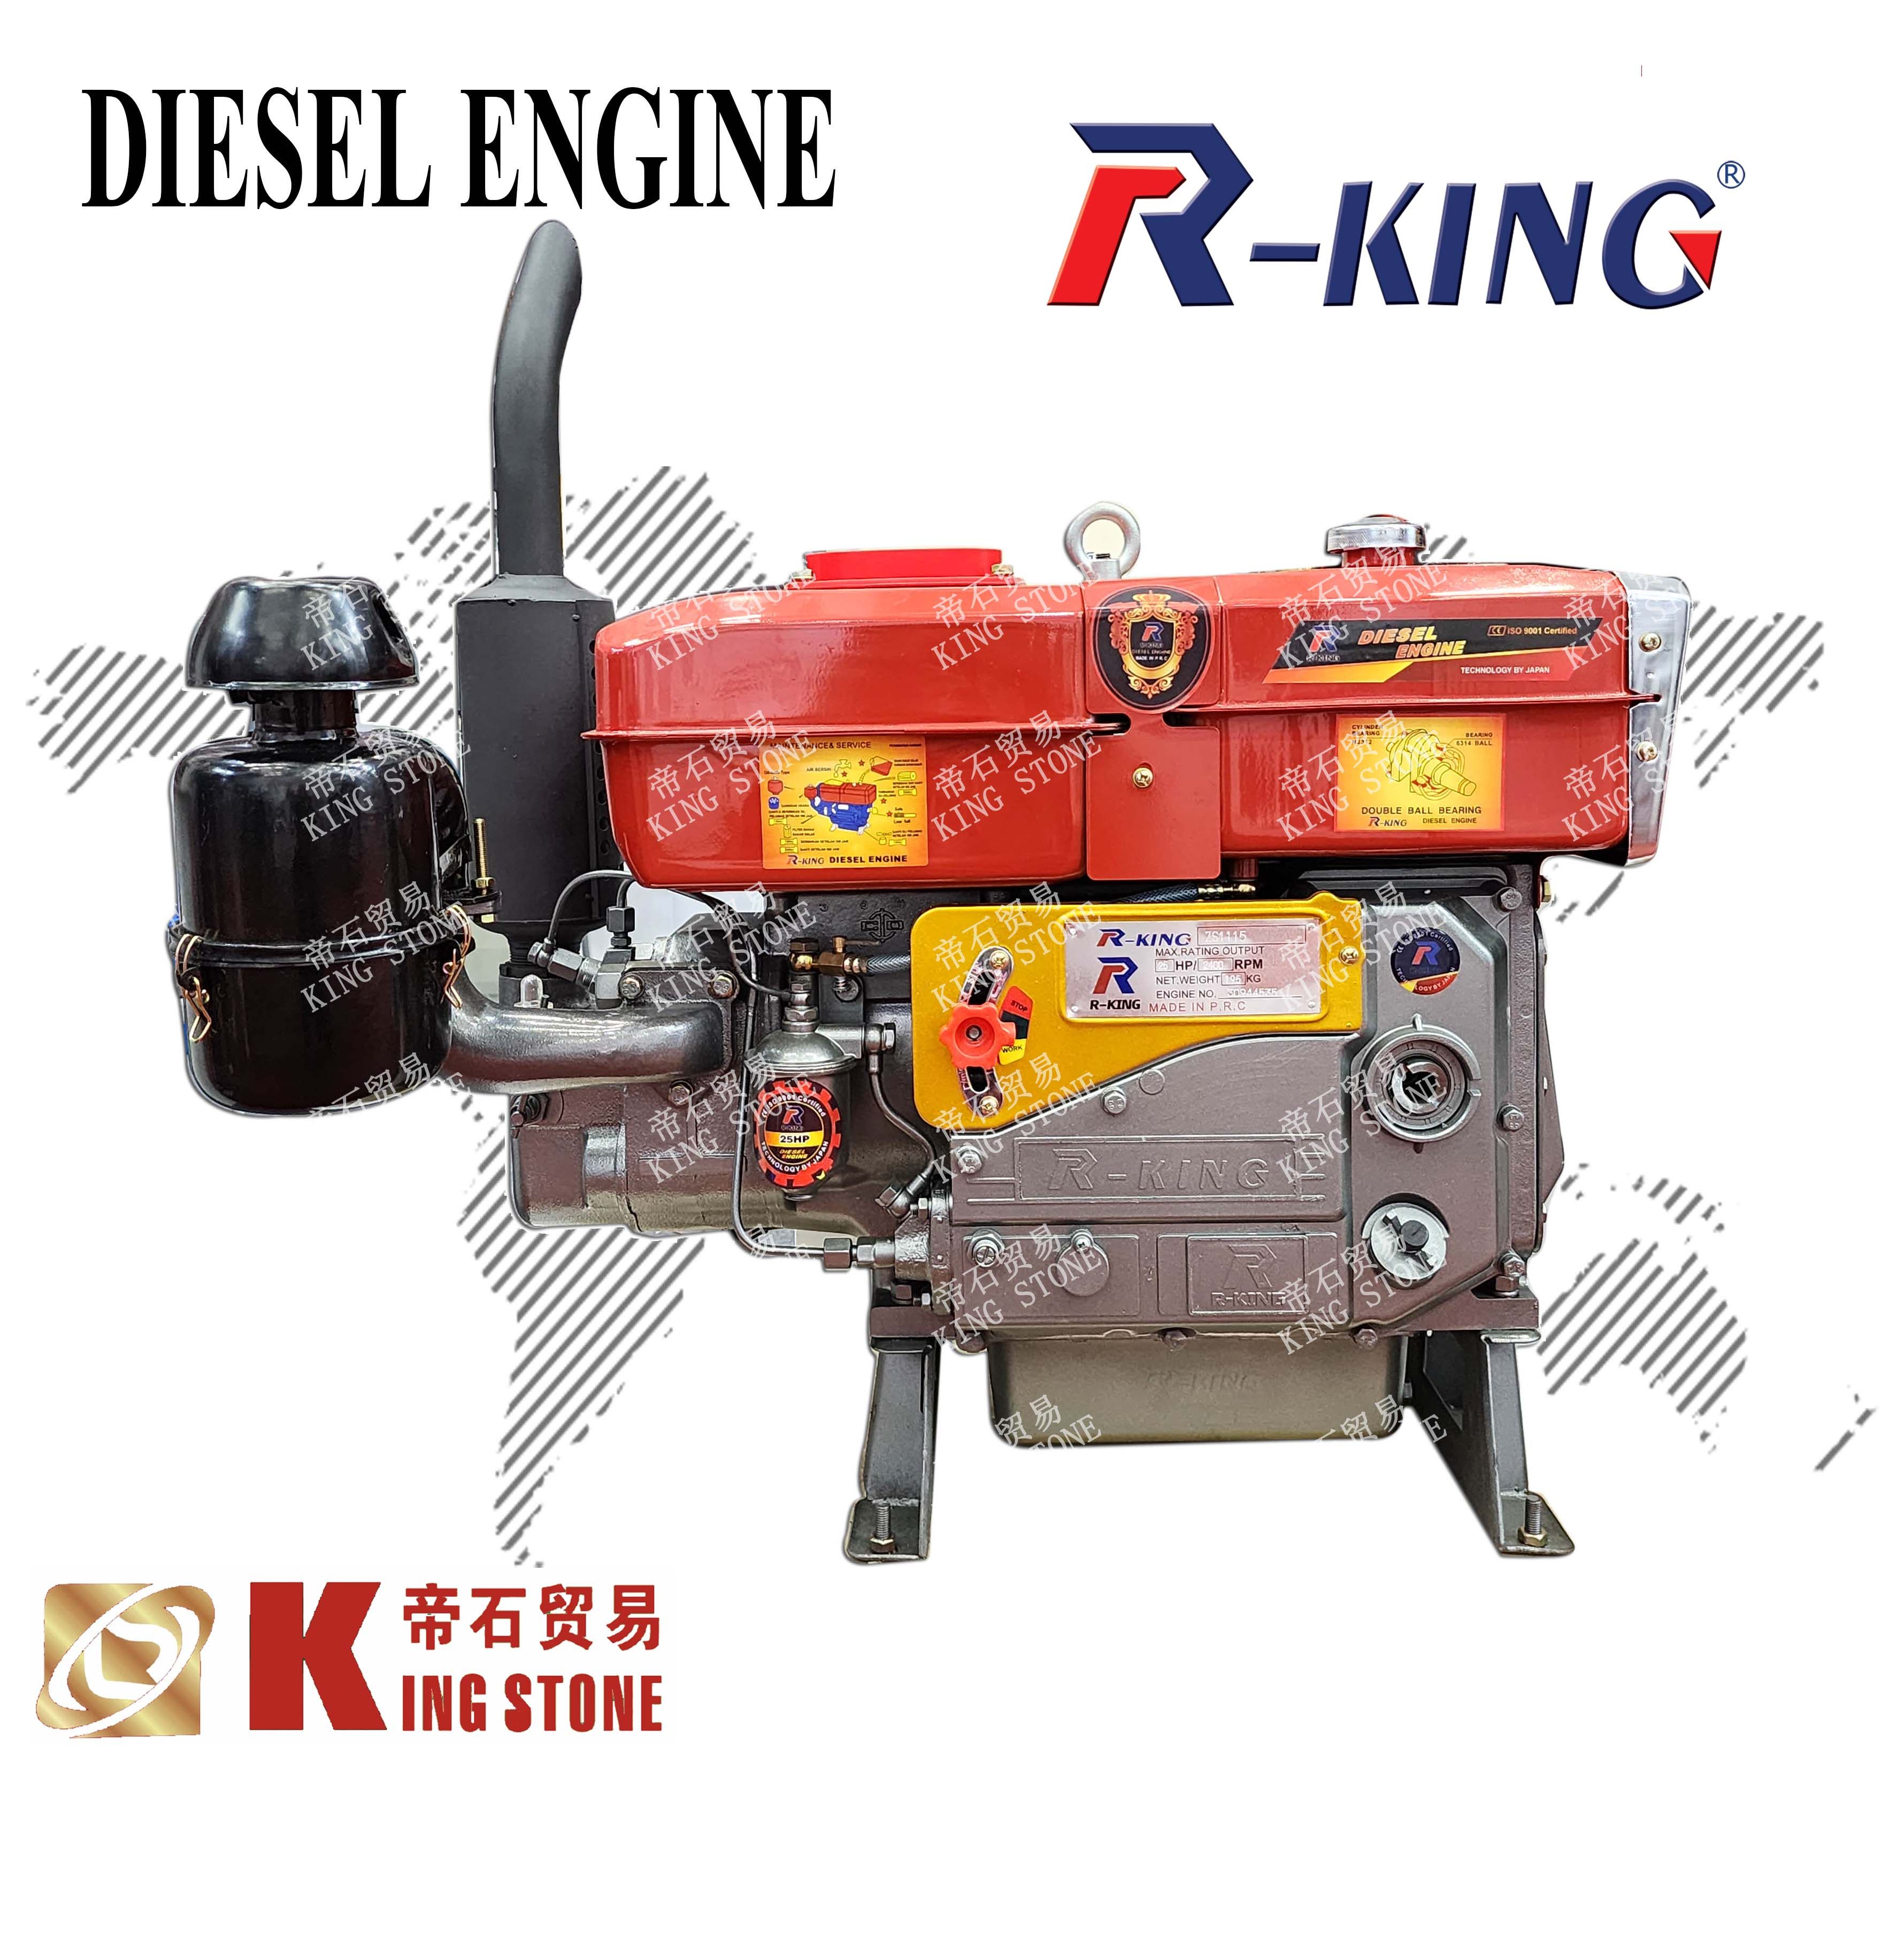 R-KING S1115 DIESEL ENGINE